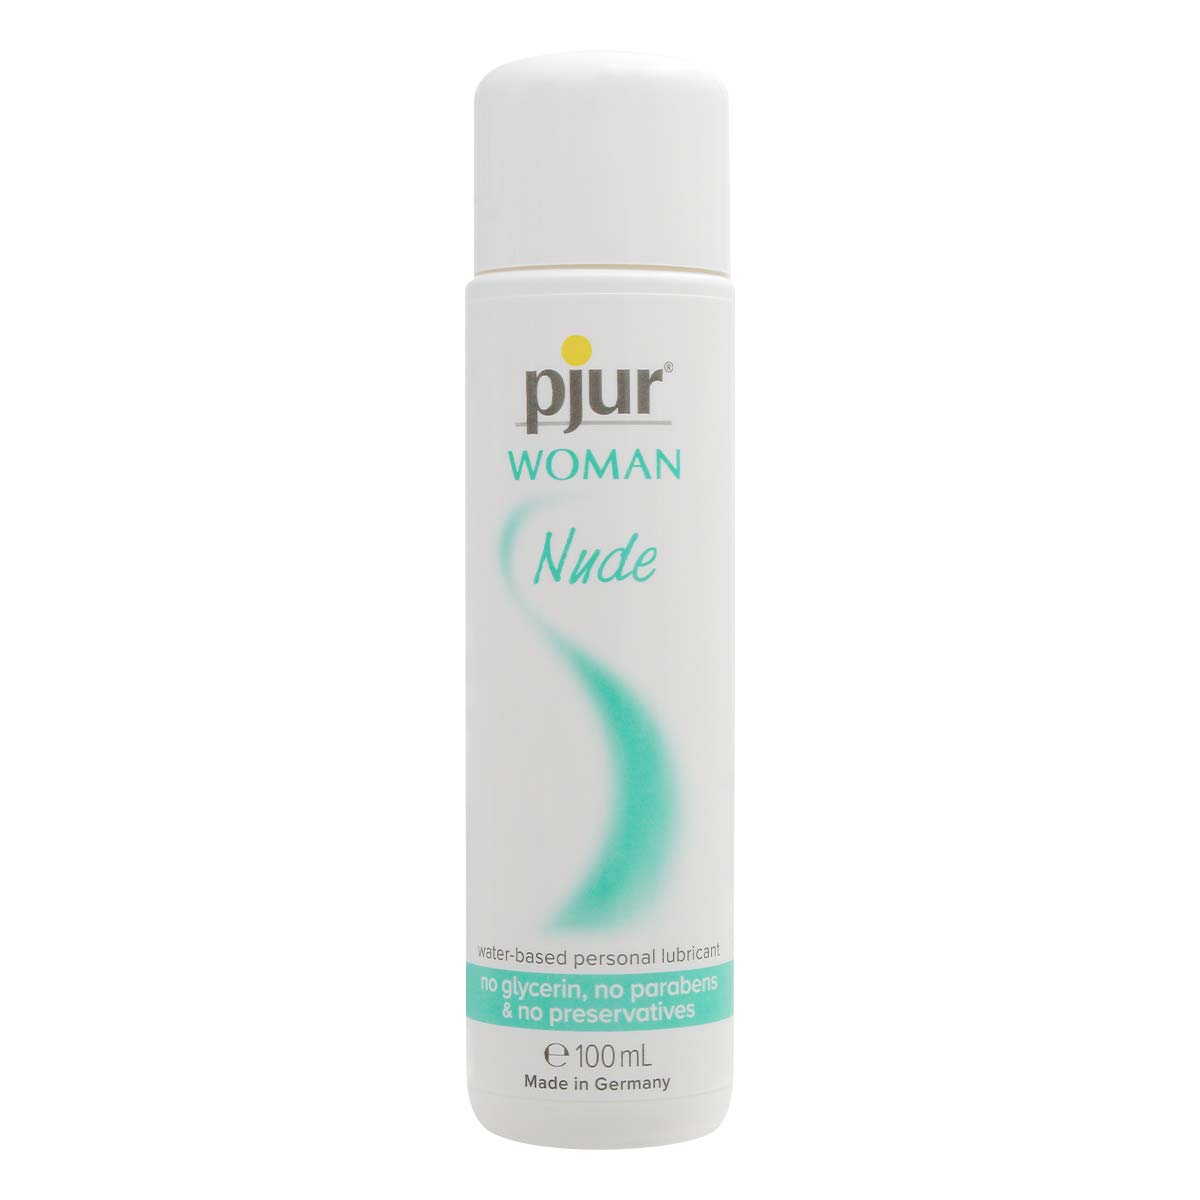 pjur WOMAN Nude 100ml 水性潤滑液-p_2